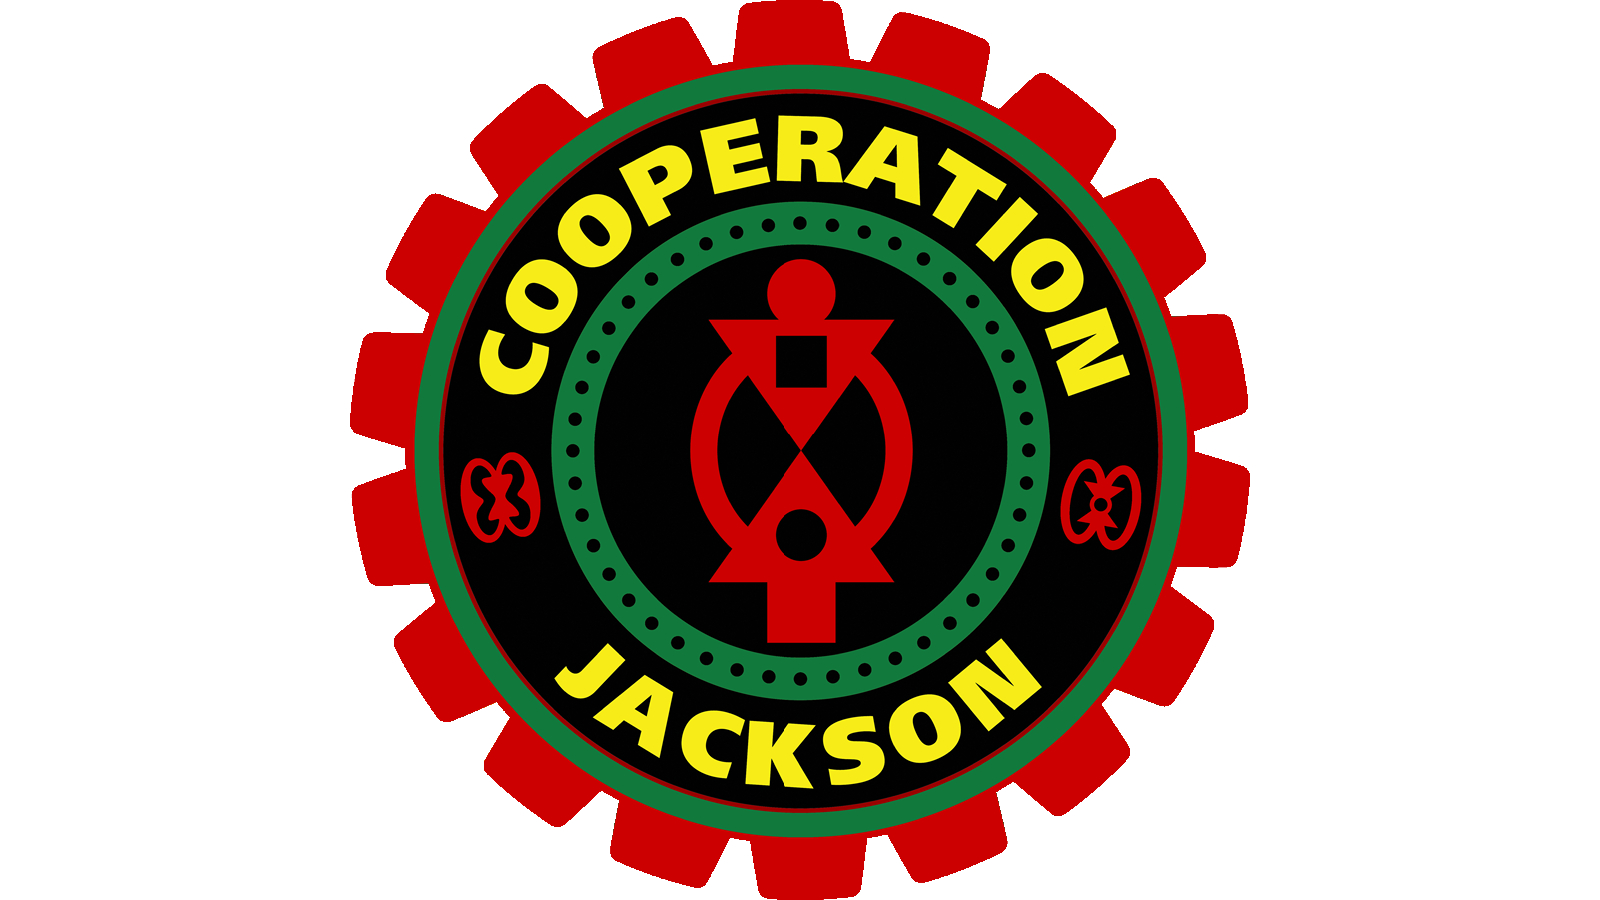 Cooporation Jackson Of Mississippi logo